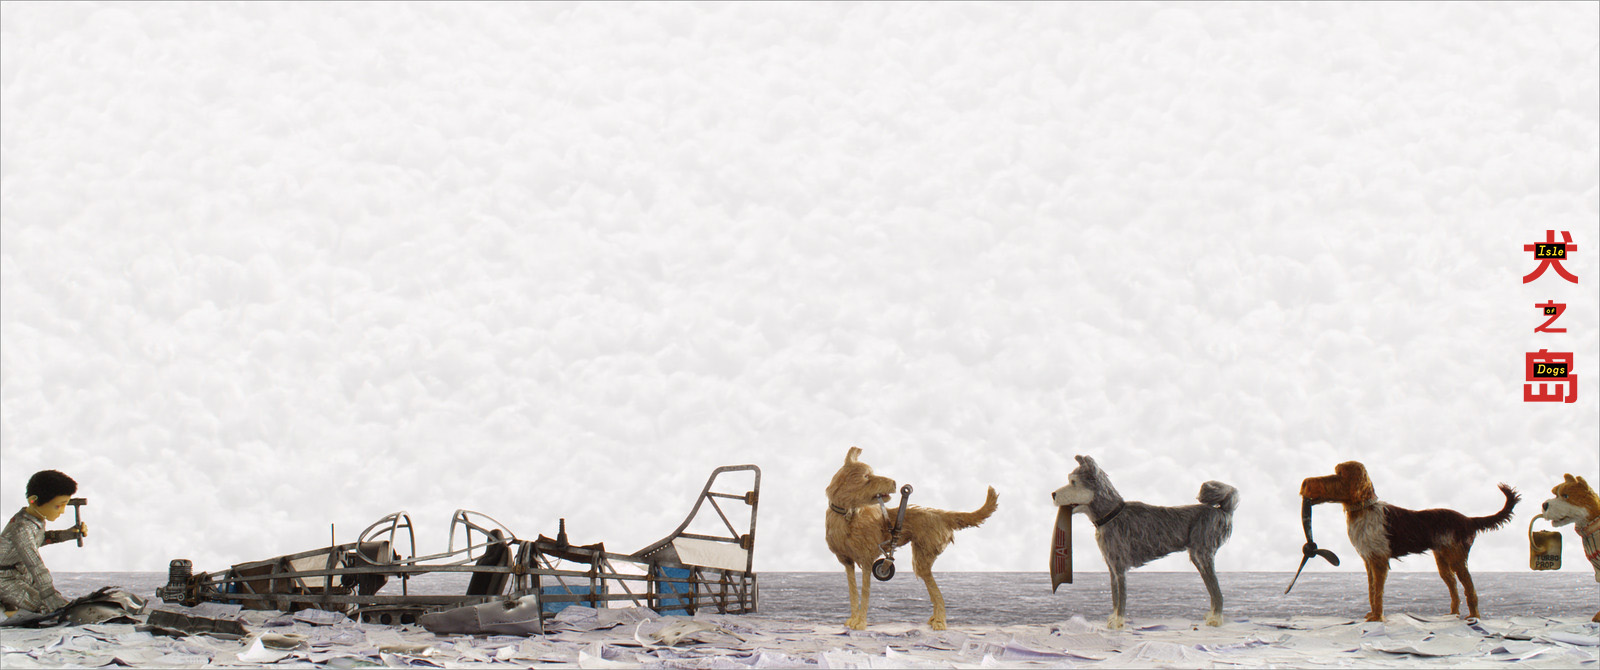 《犬之島》曝“尋找”版海報韋斯·安德森再度打造定格動畫奇幻夢境